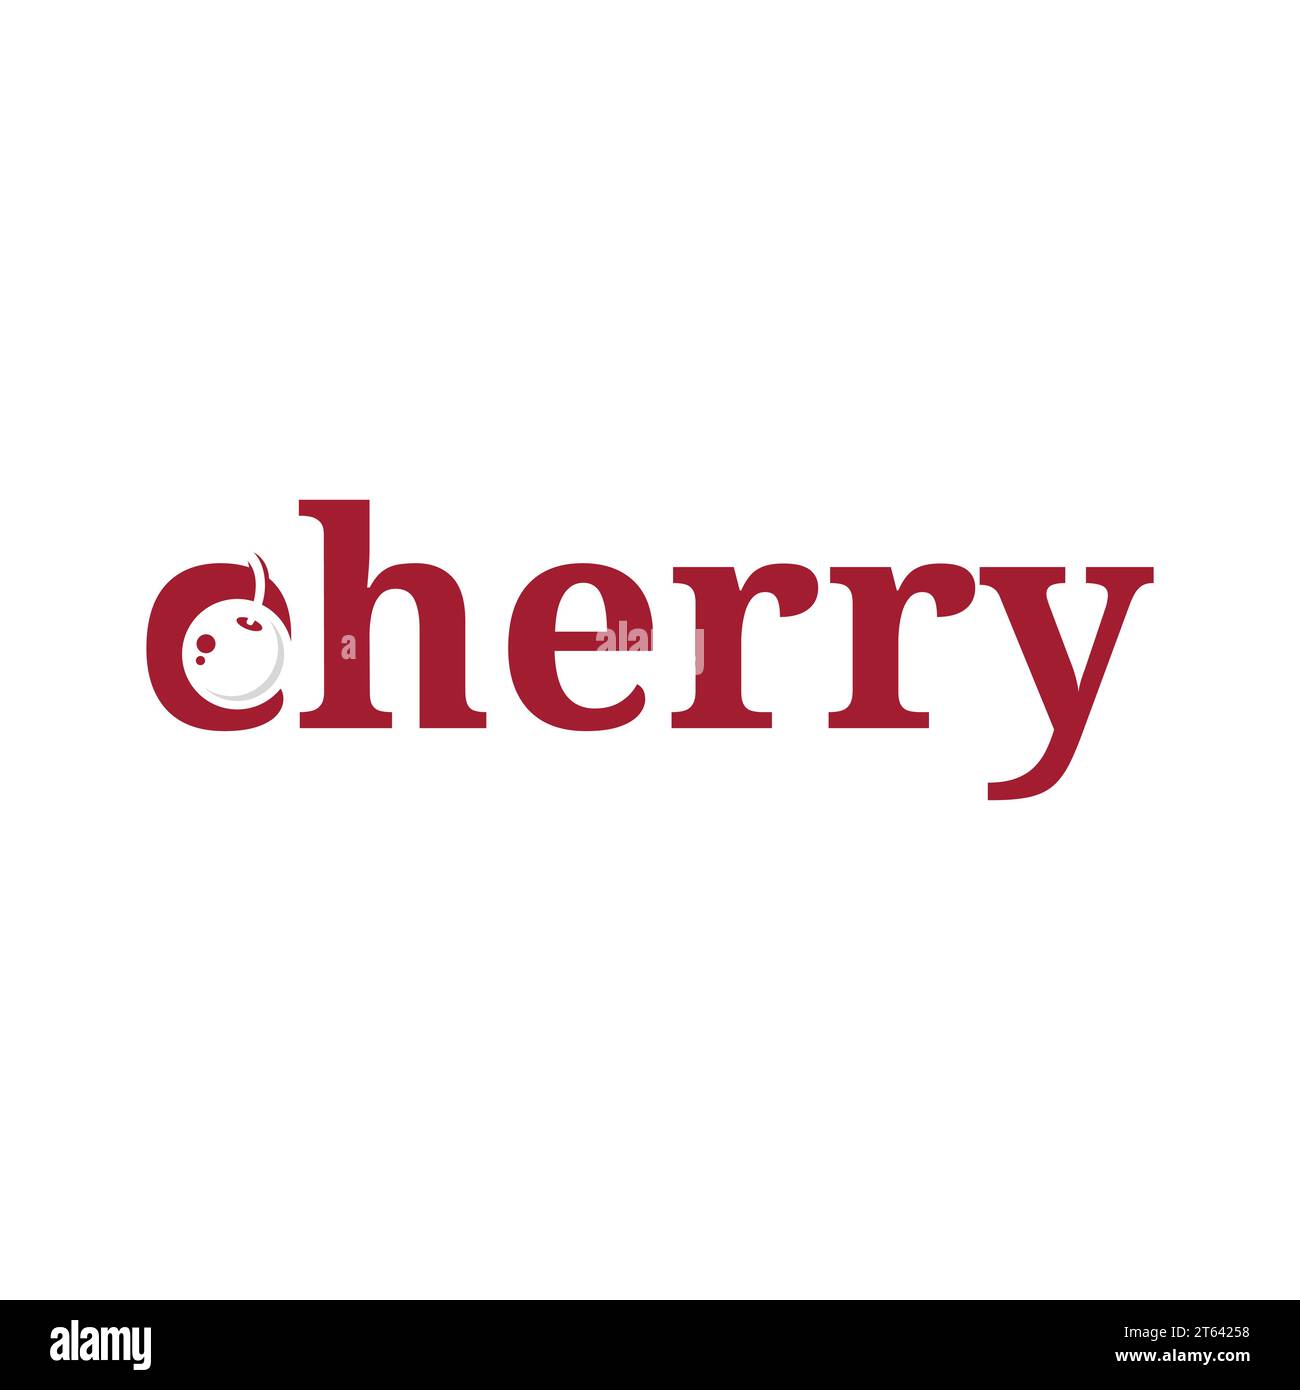 Cherry Typografie Logo Vektor Design. Cherry Hand Schriftzug. Vektorillustration für Ihr Design. Stock Vektor